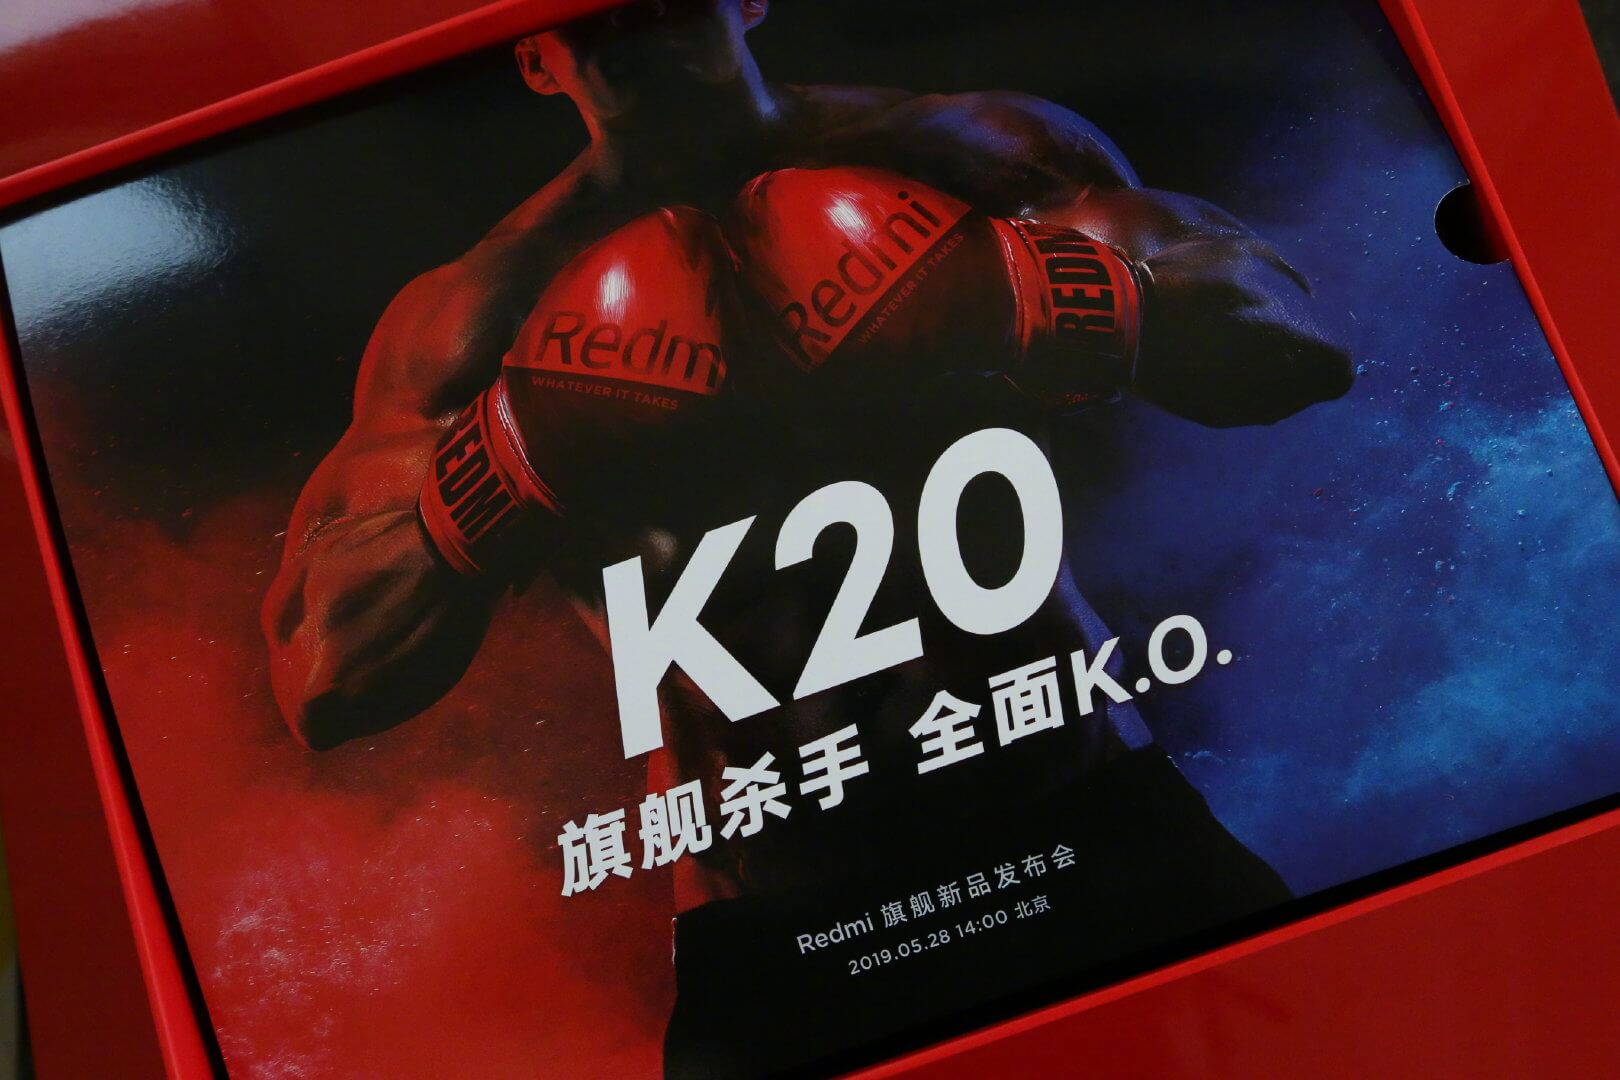 Guantes de Boxeo GRATIS con el nuevo Redmi K20